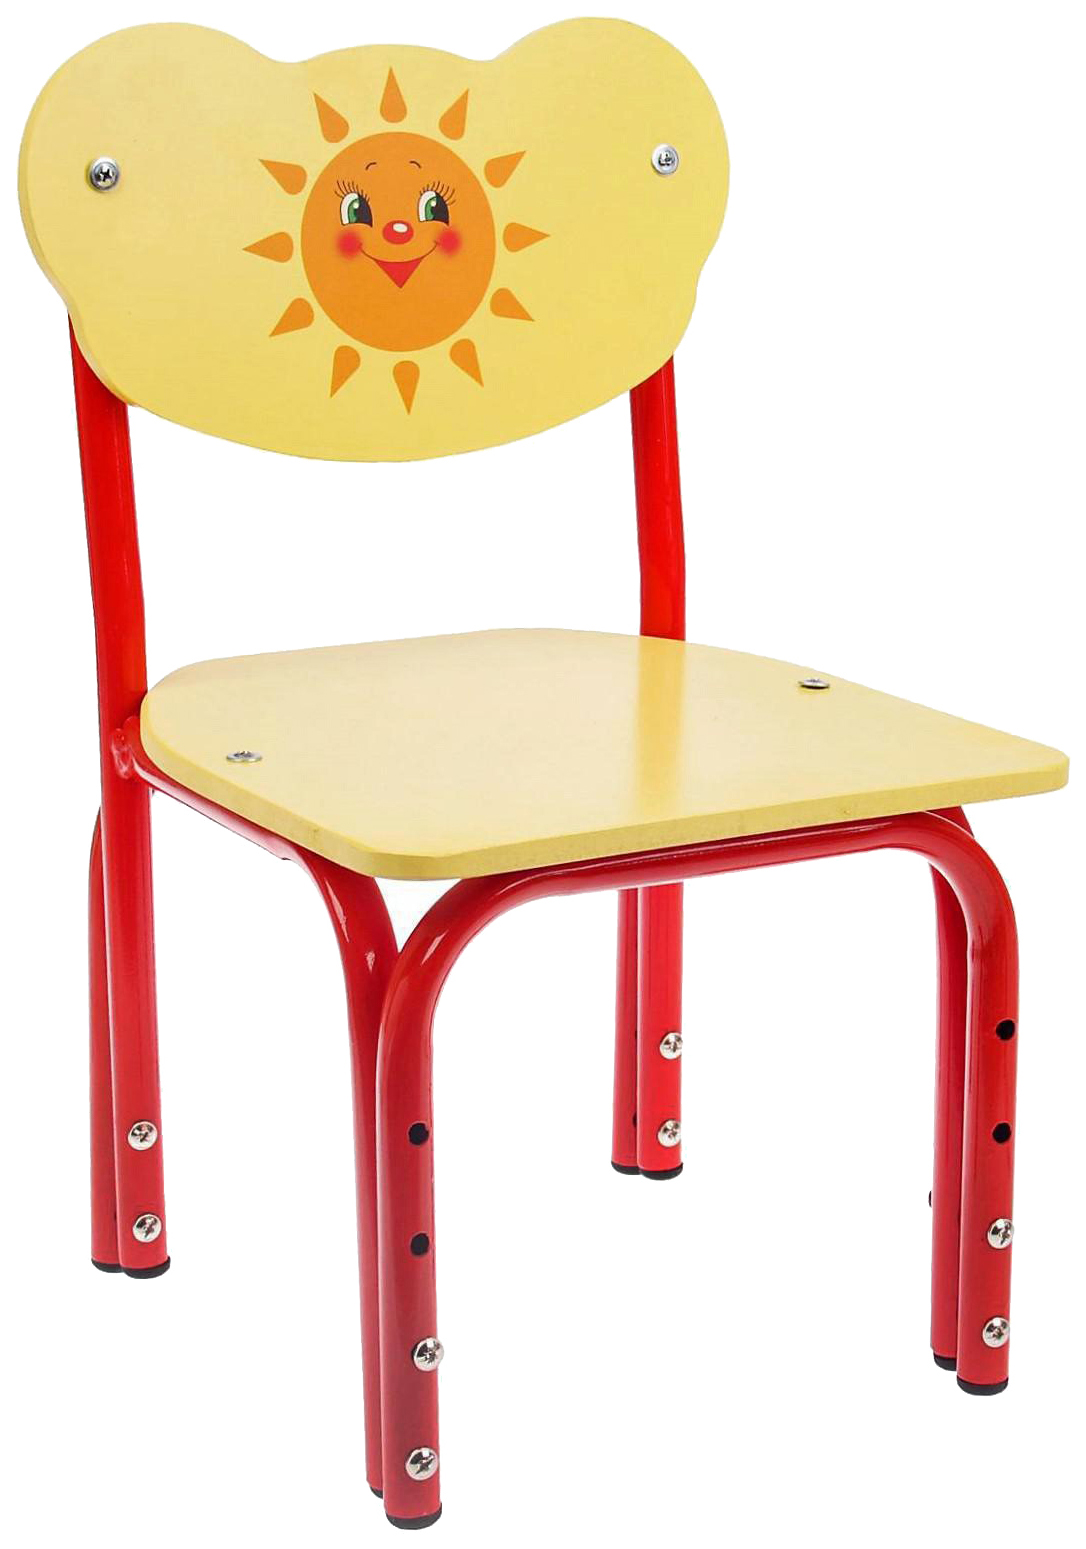 Детский стул Кузя. Солнышко, регулируемый, разборный растущий стул друг кузя красный